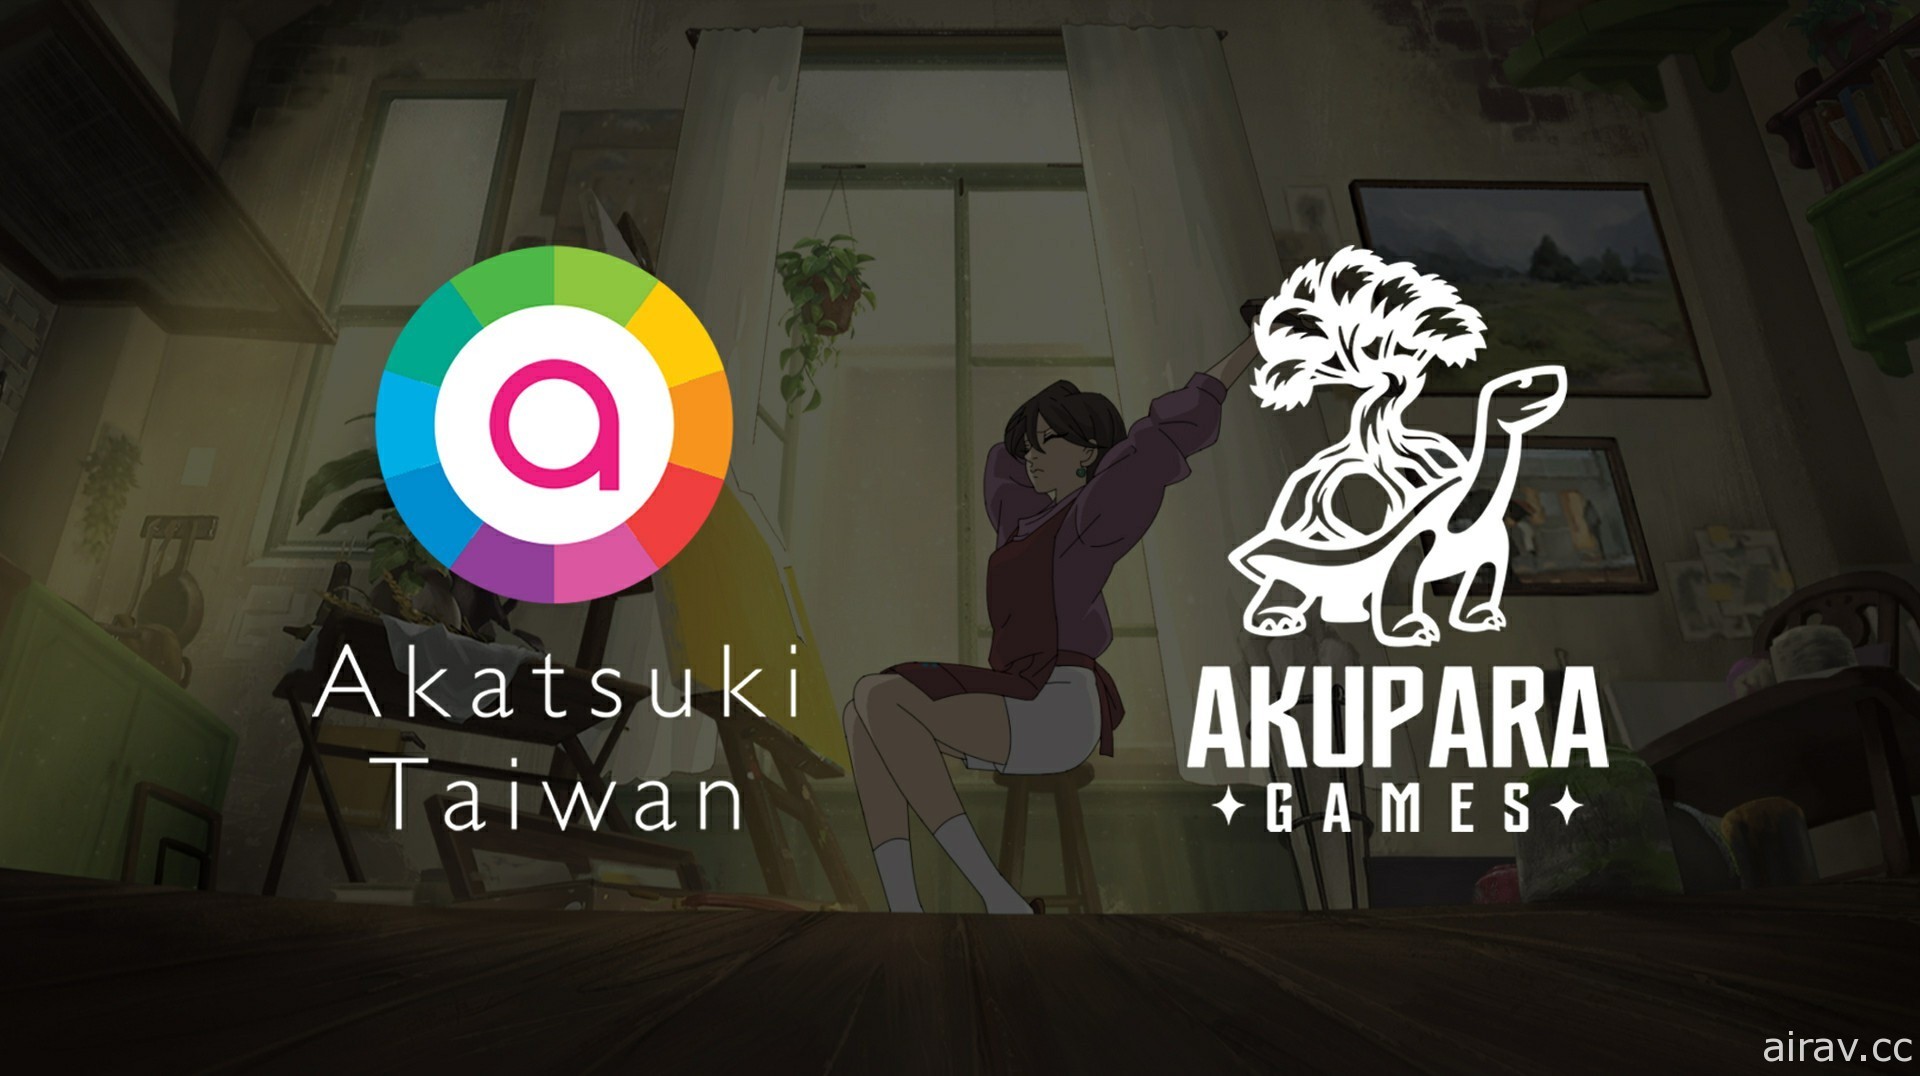 《傾聽畫語》宣布與「Akupara Games」合作於全球發行遊戲並追加推出 PC 版